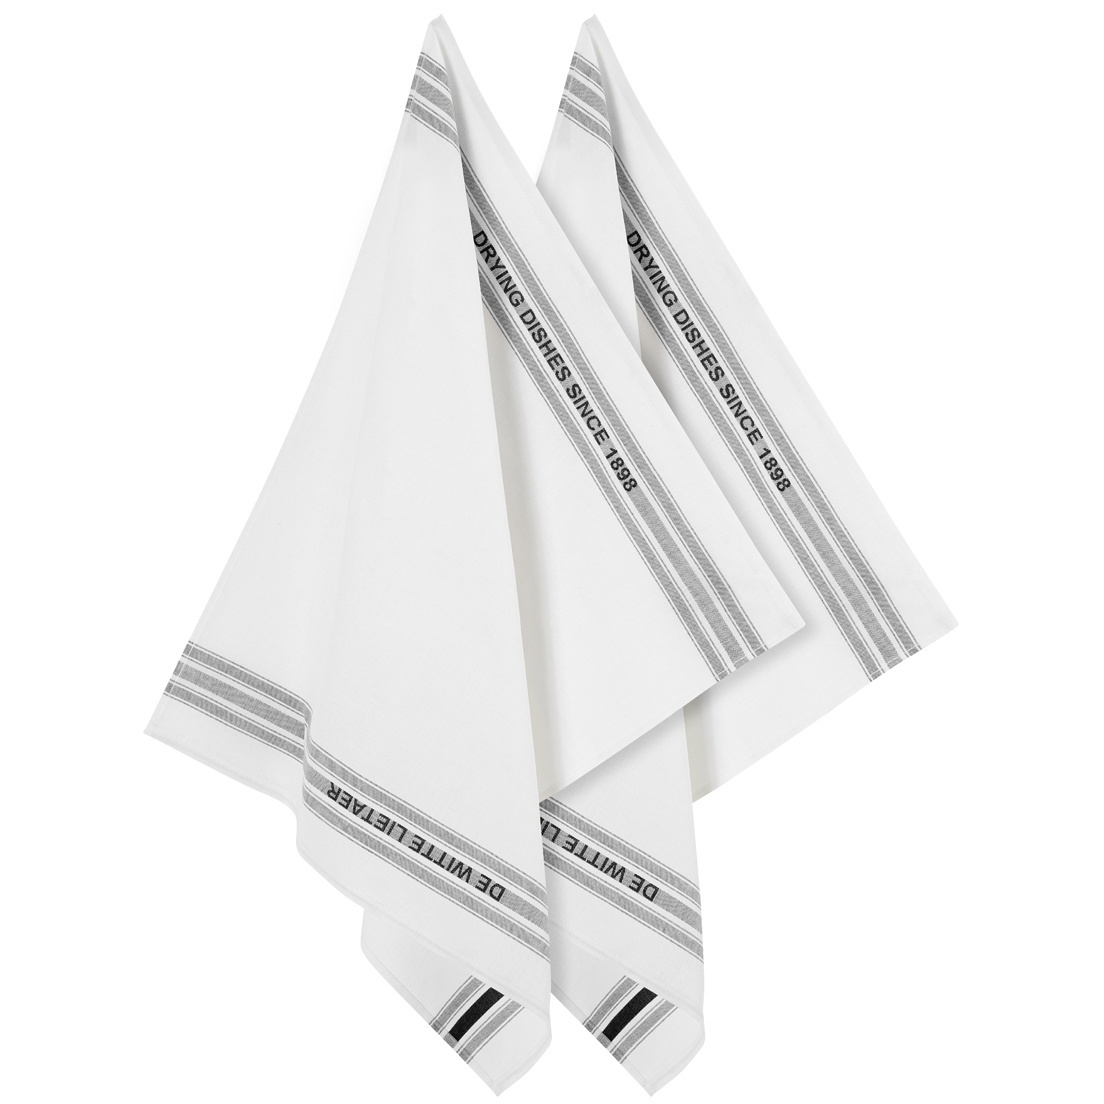 De Witte Lietaer Tea towel Dish, Black - 2 pieces - 65 x 70 cm - Cotton/Linen